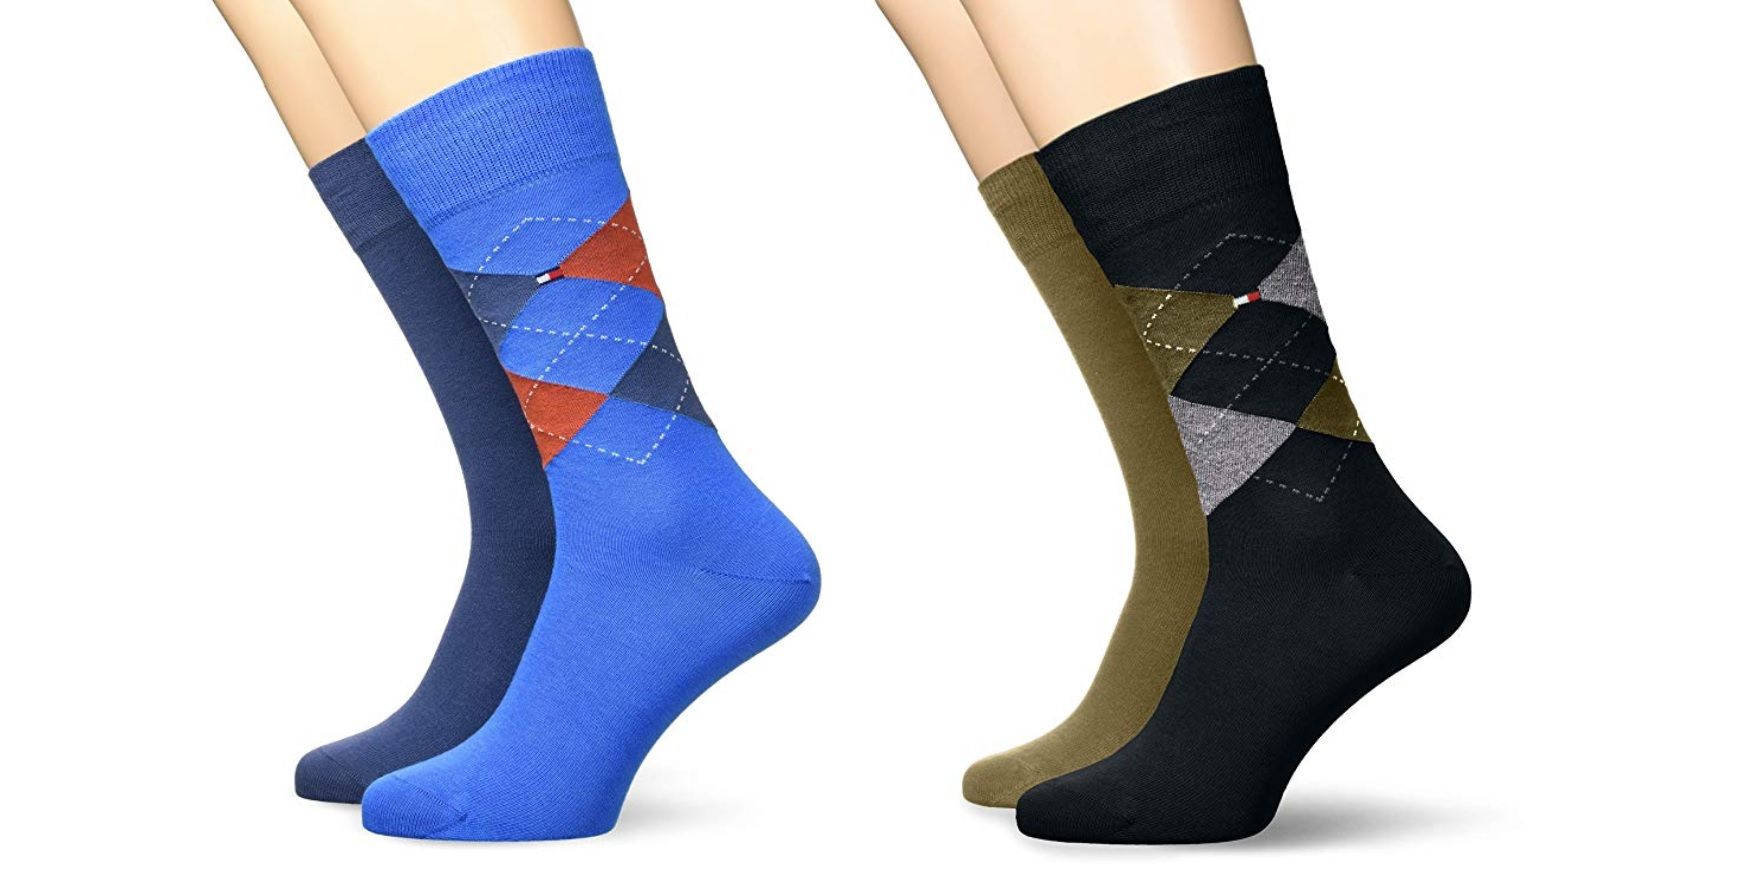 ¡Chollo! 2 pares de calcetines de Tommy Hilfiger desde sólo 11,43€ ¡En varios colores!